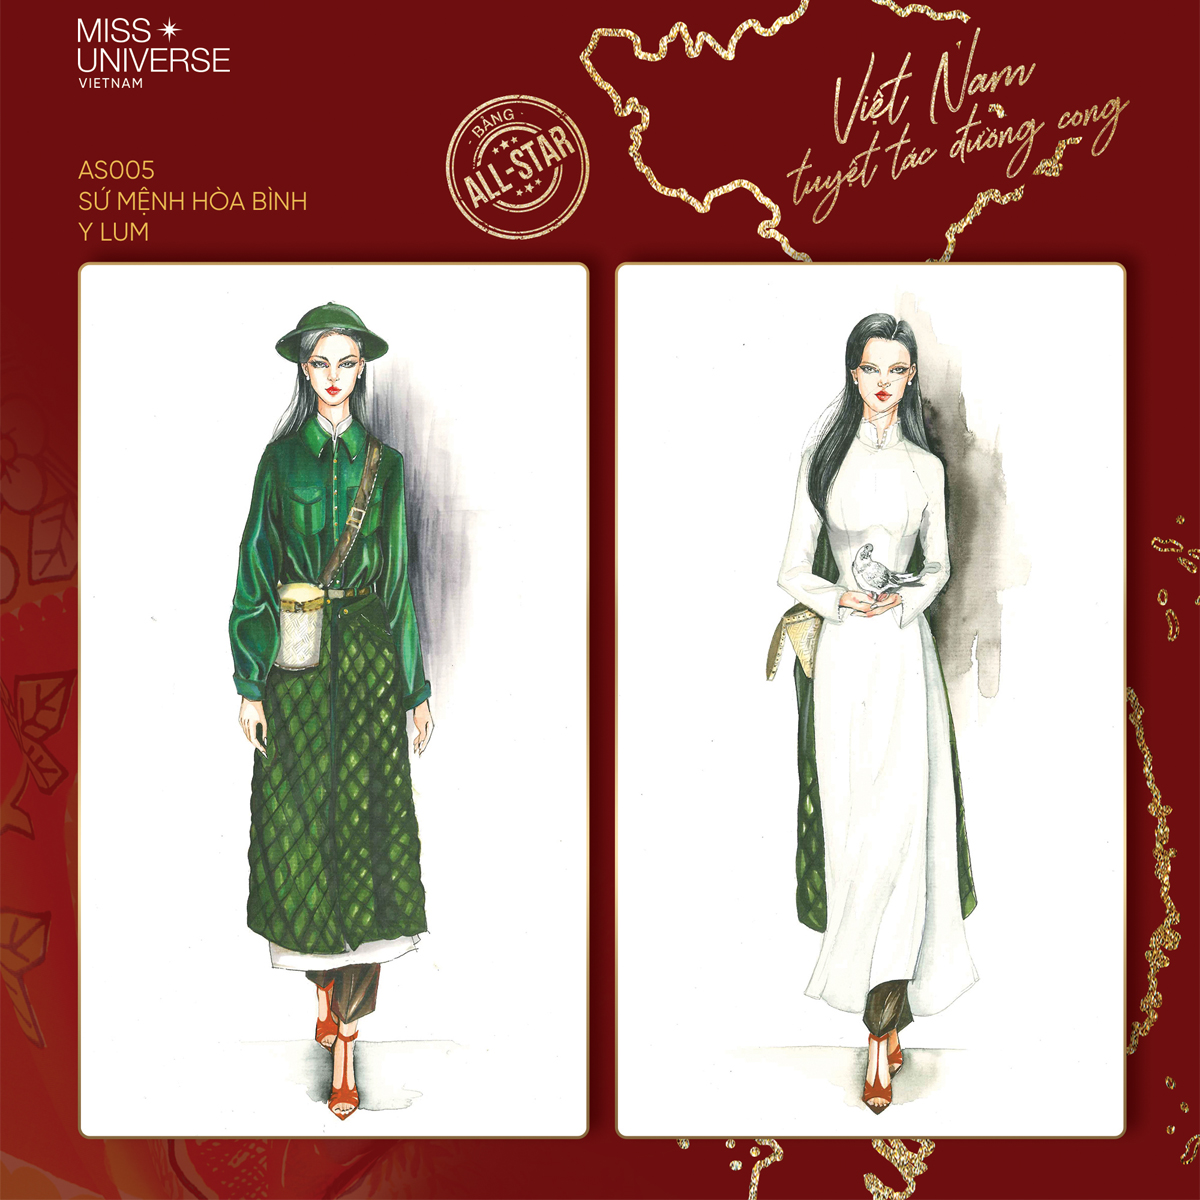 Trang phục dân tộc Khánh Vân thiết kế mang đến cho người mặc sự trang trọng, sang trọng và cổ kính đầy lịch sự. Hãy xem bức hình liên quan để khám phá thêm sự đa dạng và phong phú trong các bộ đồ dân tộc.